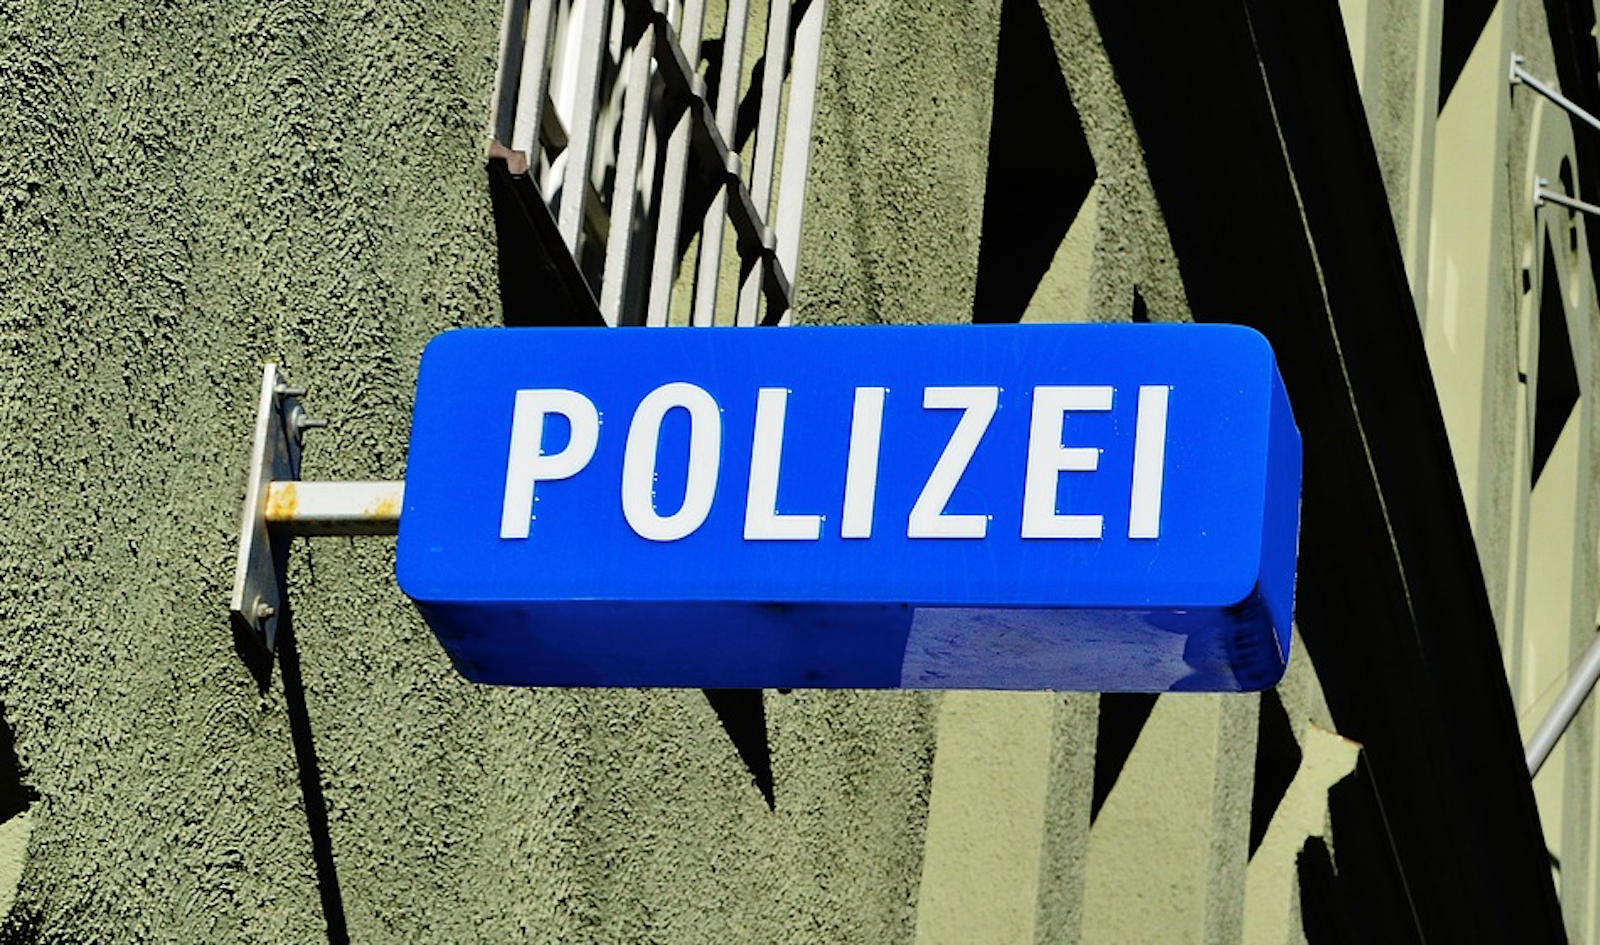 Polizei_Anzeige_Noetigung